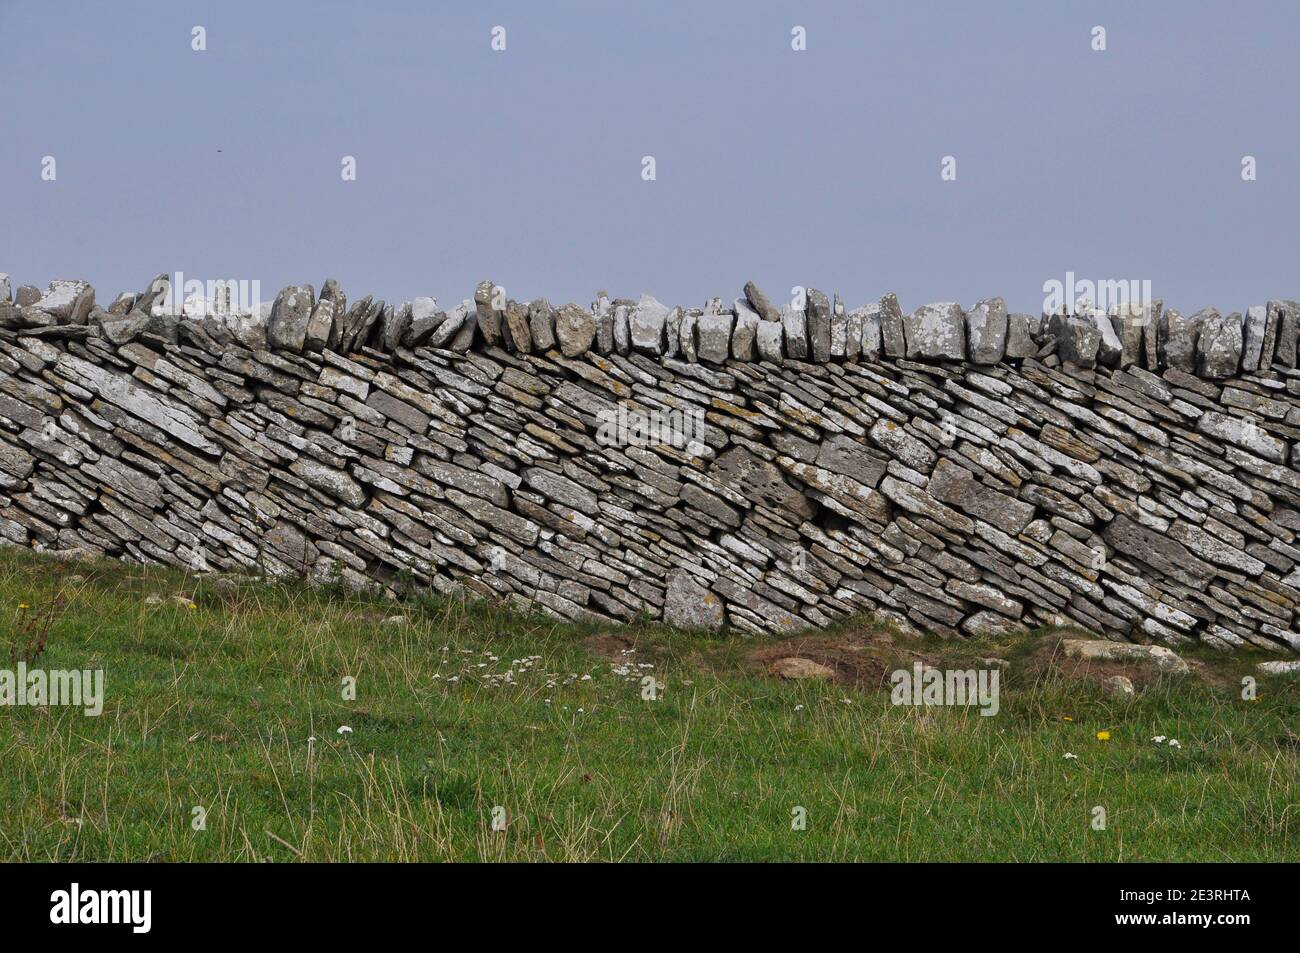 Asciugare la parete in pietra con corsi in pendenza e rabboccato con verticale di pietre di tappatura sull'Isola di Purbeck, Dorset. Ruvide pareti calcaree divide i campi costiere. Foto Stock